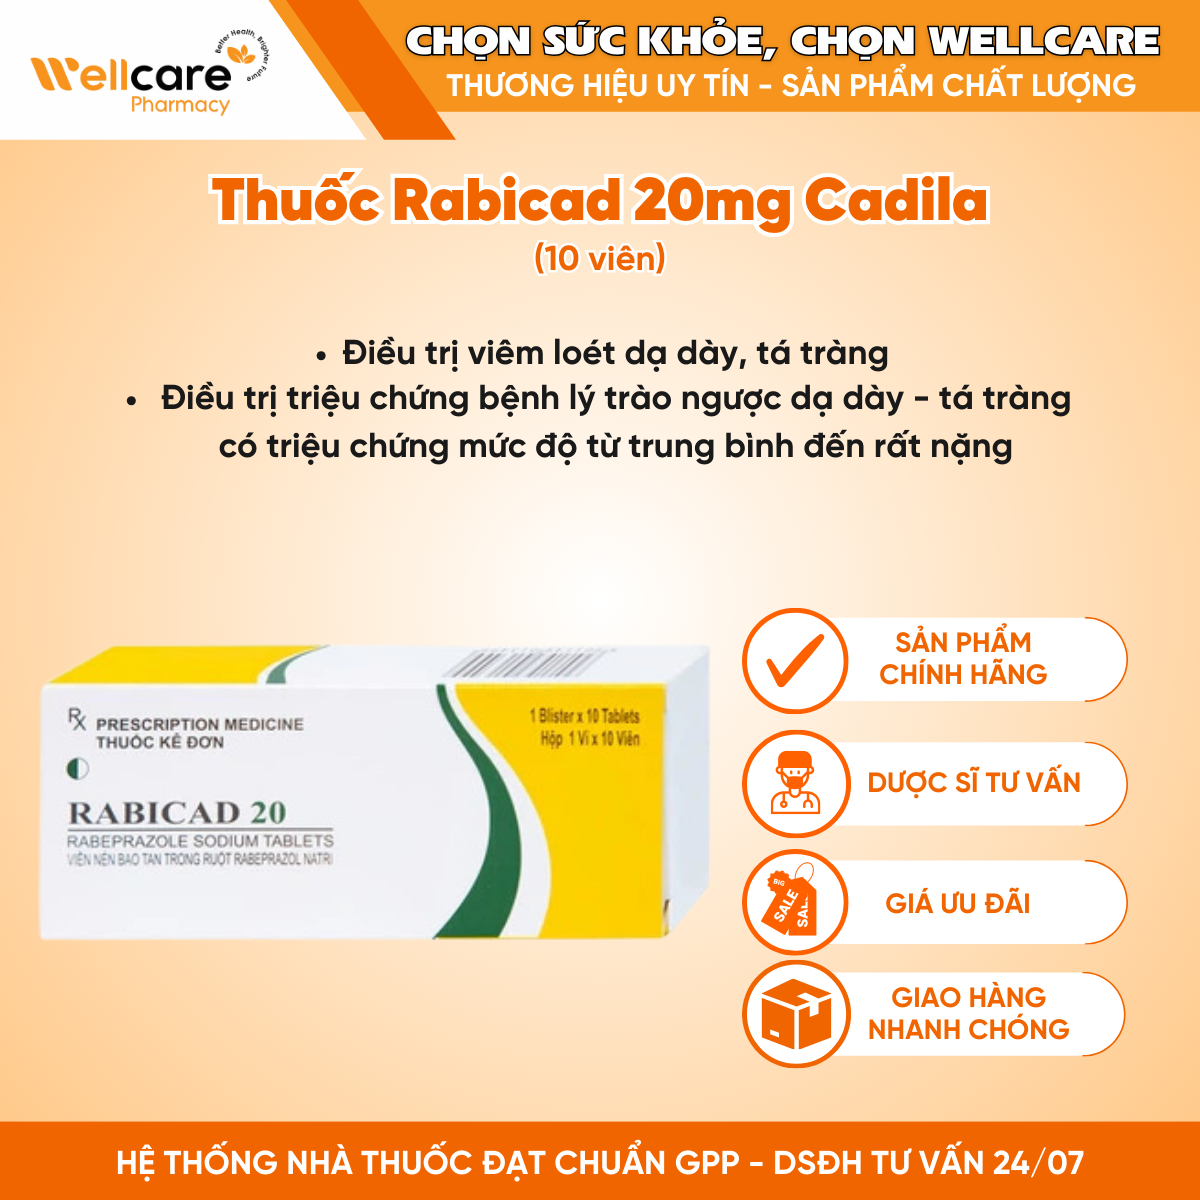 Thuốc Rabicad 20mg Cadila – Điều trị viêm loét dạ dày, tá tràng (10 viên)